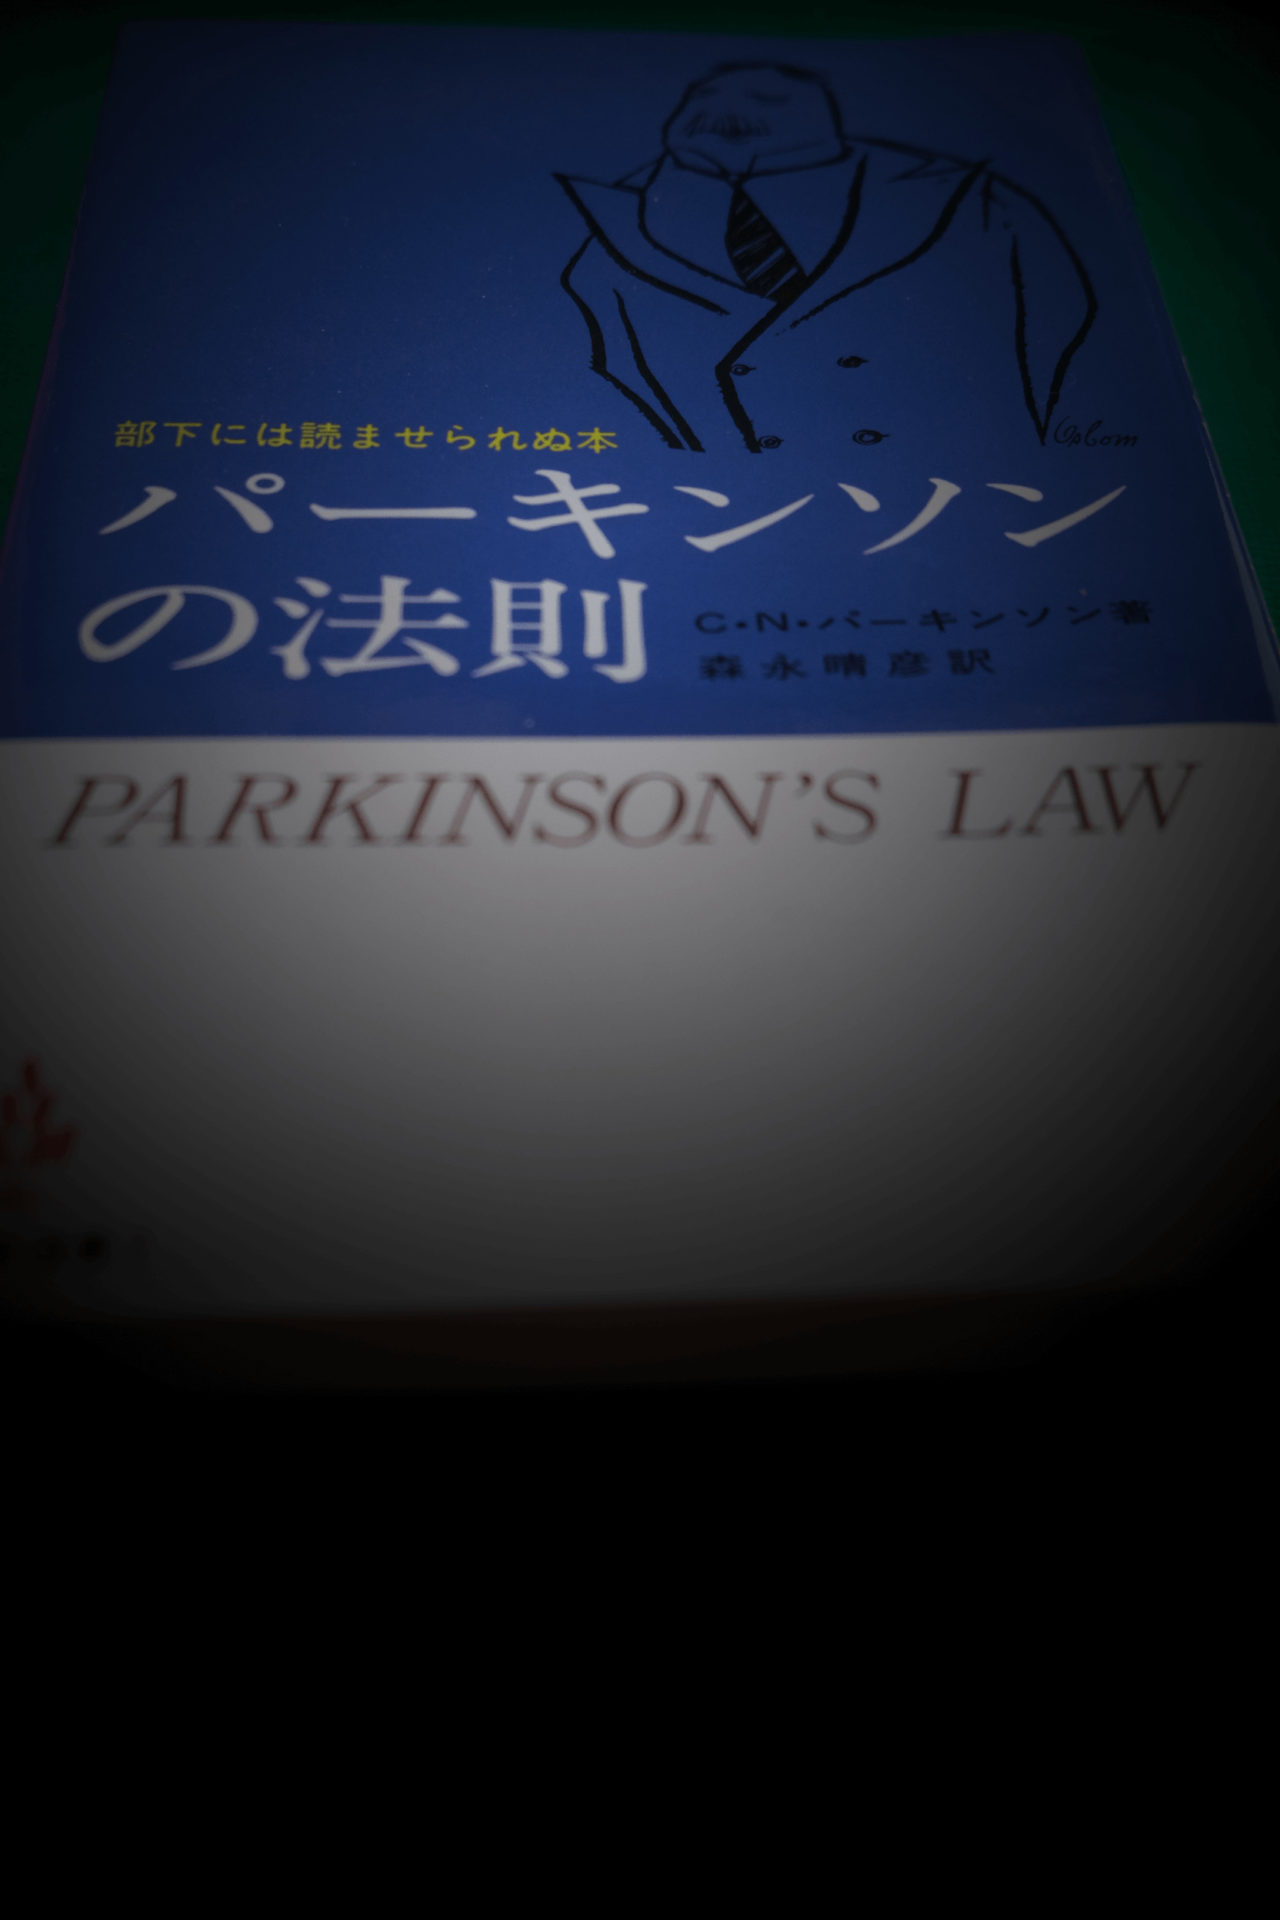 パーキンソンの法則